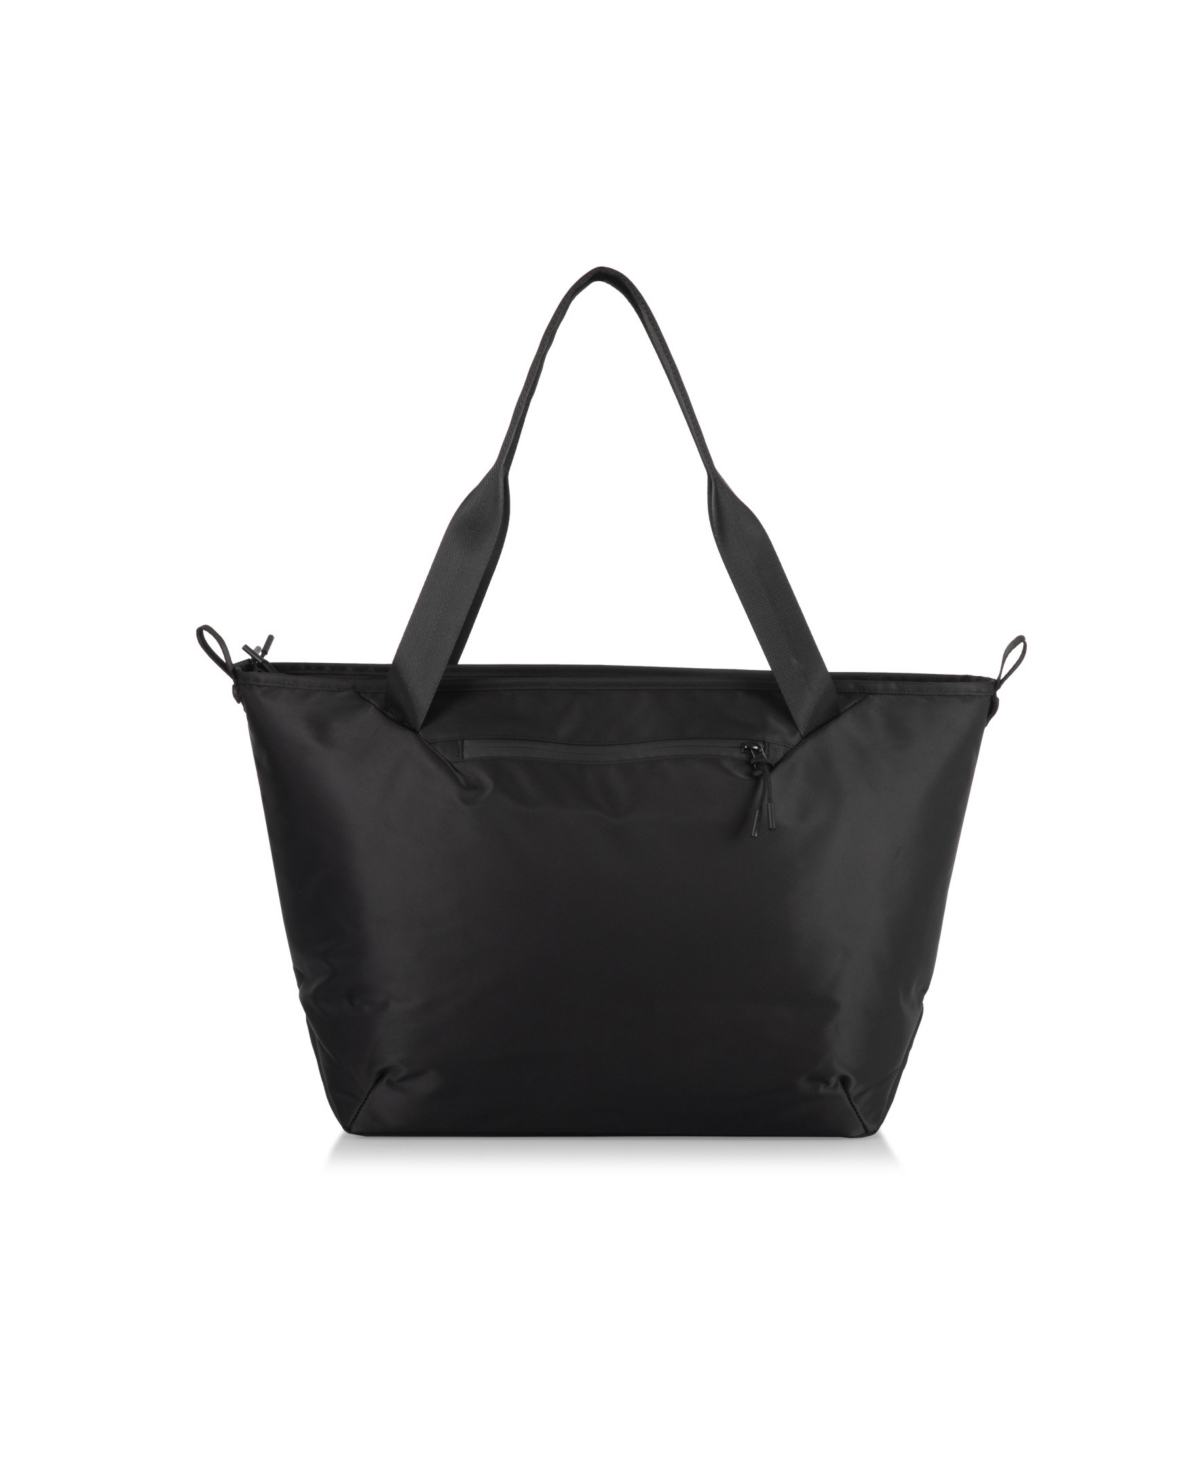 Oniva Tarana Cooler Tote Bag In Carbon Black